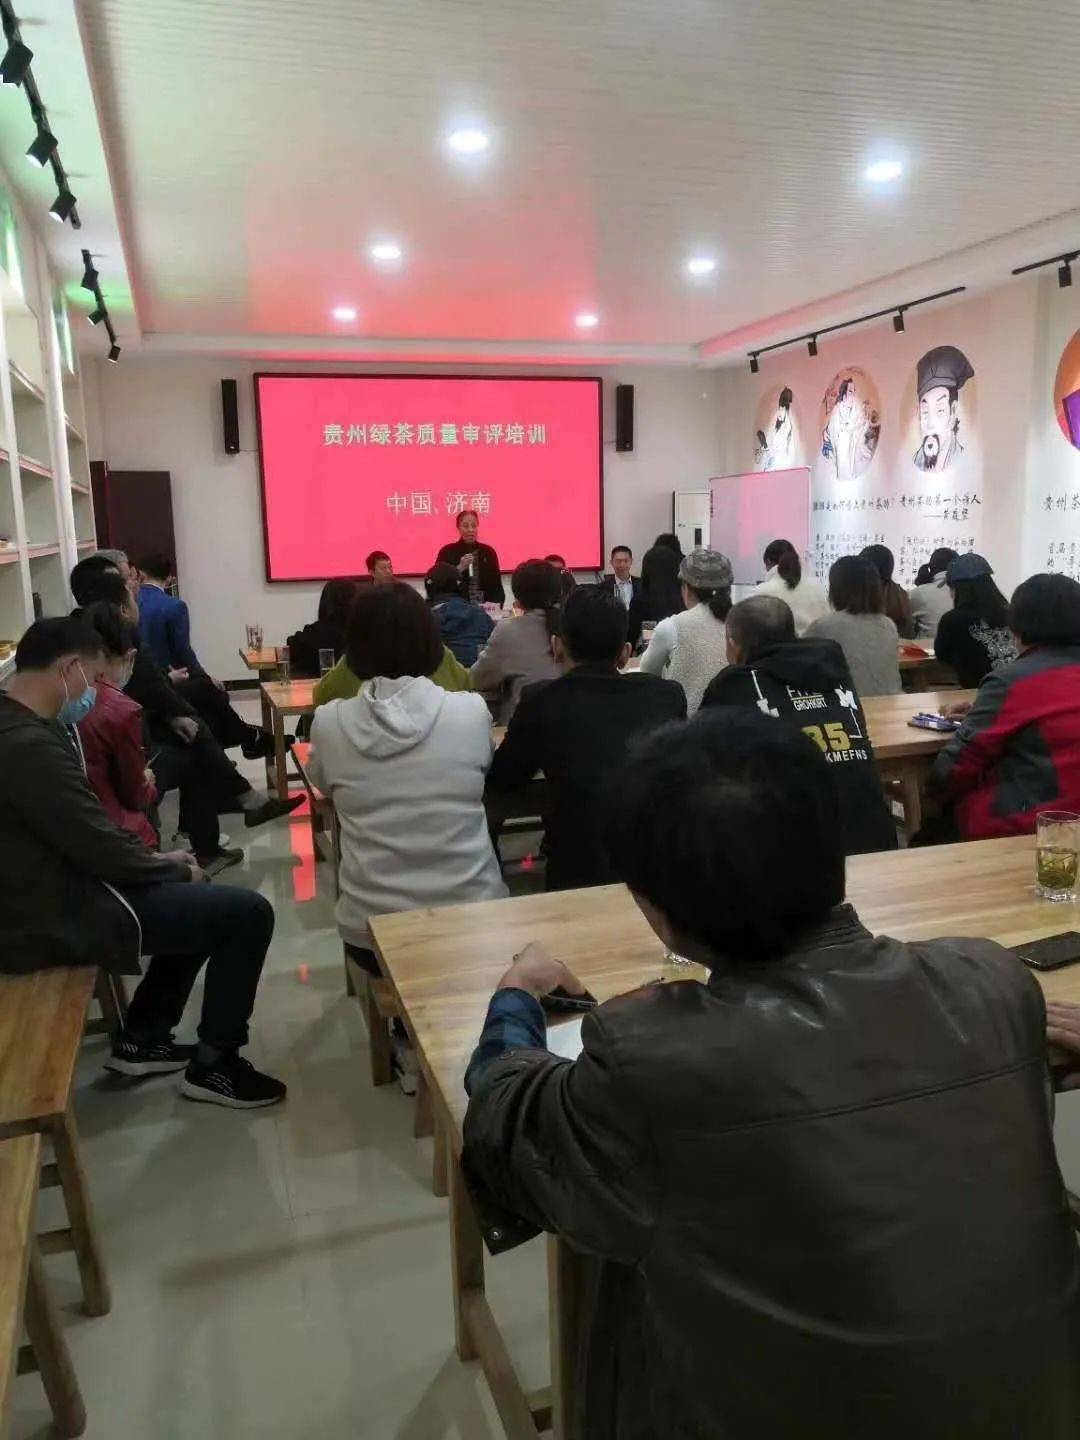 云开体育app下载_*
贵州绿茶品牌生长促进会山东分会会员销